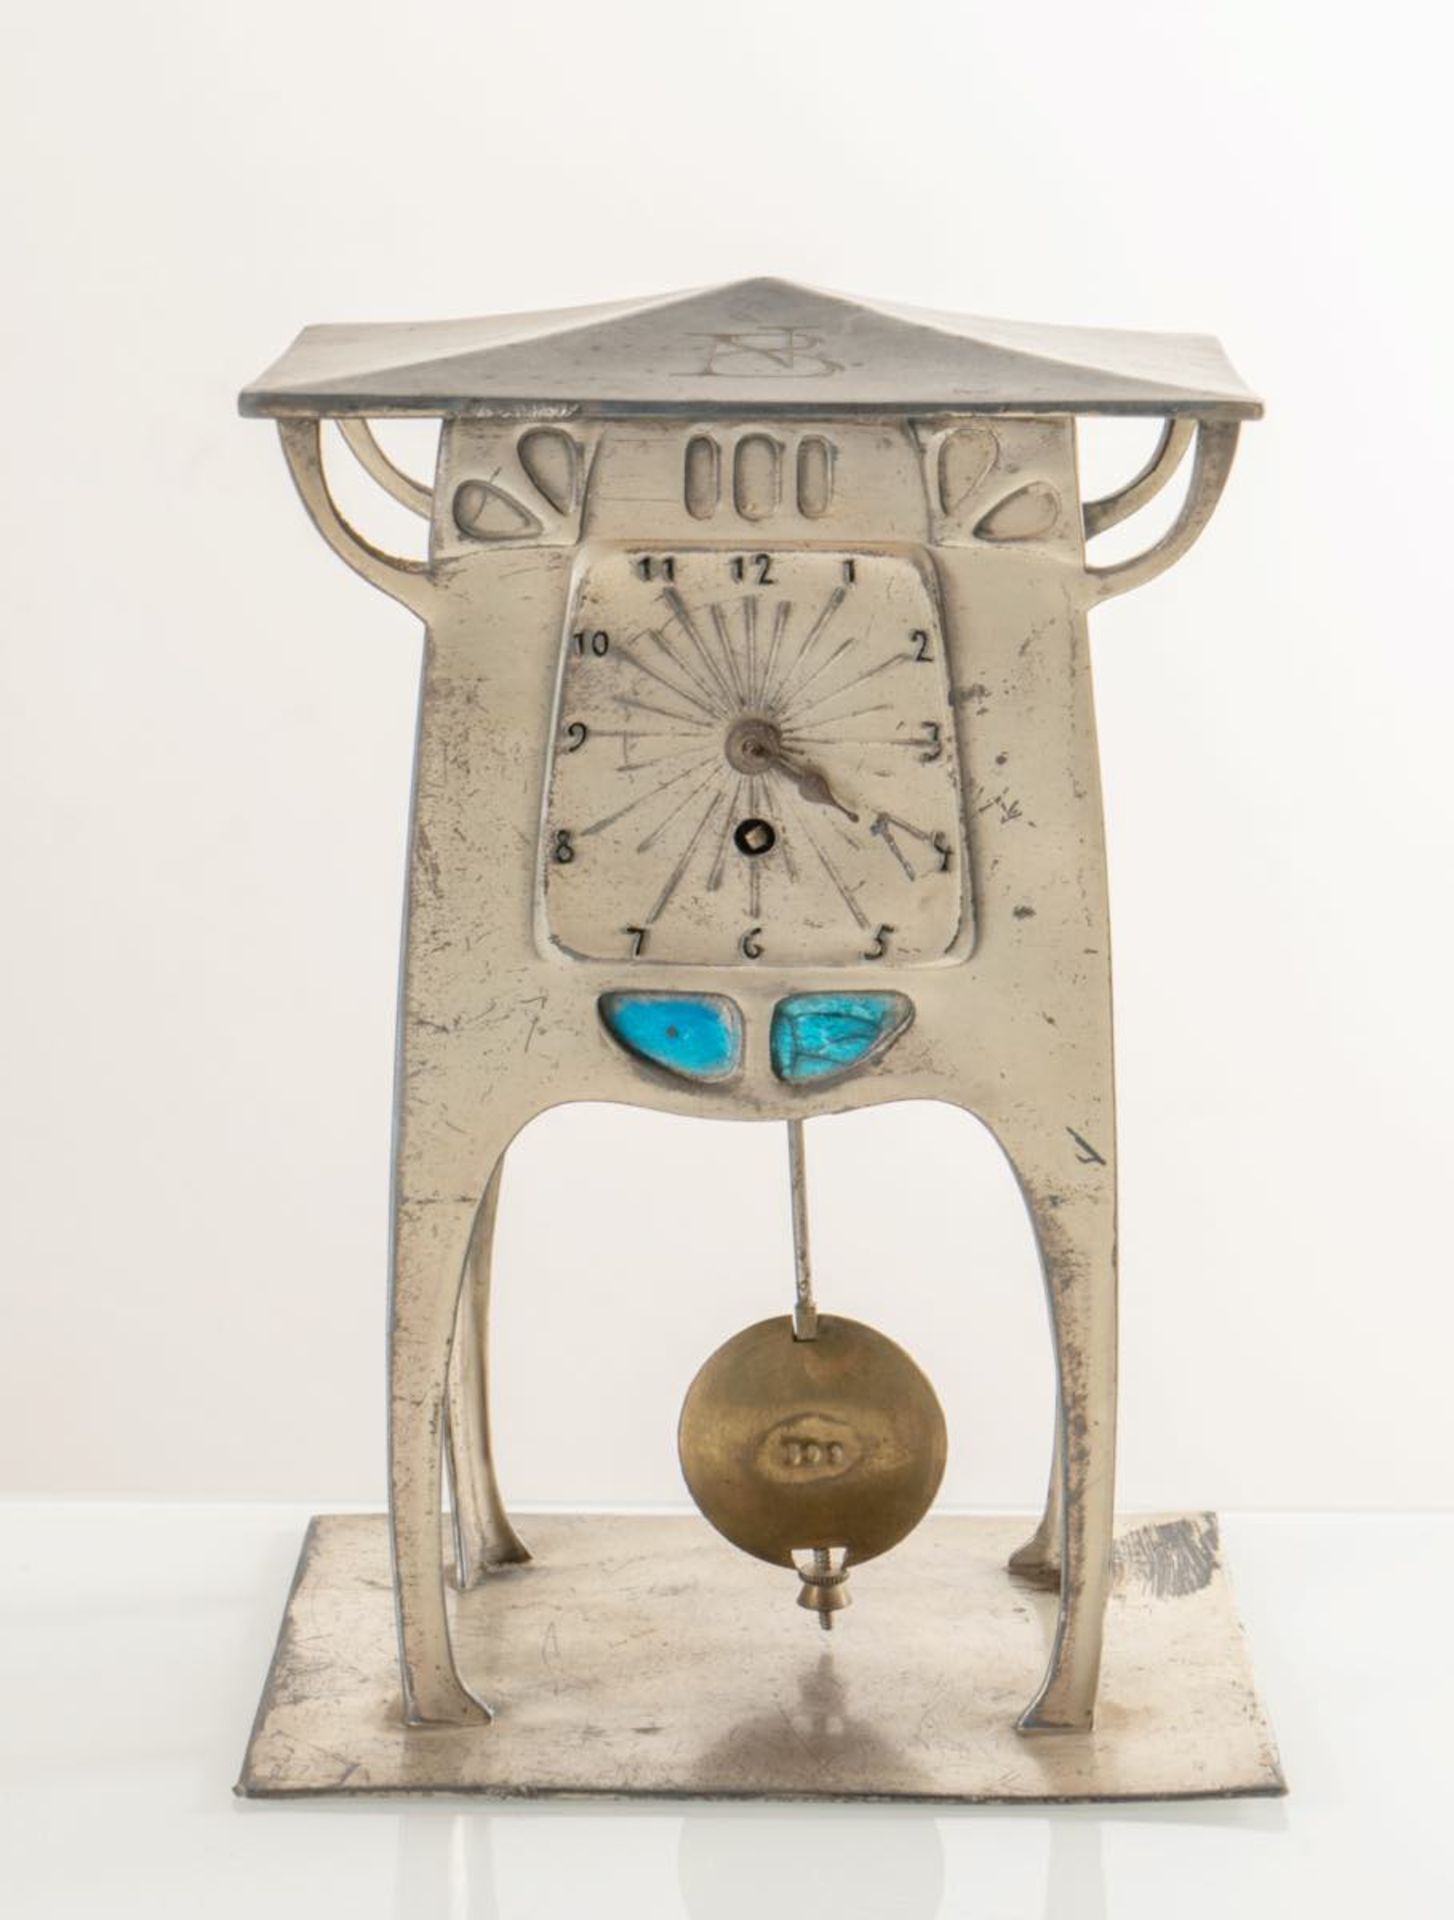 Orologio a pendolo di gusto Art Nouveau, Germania, inizi del XX secolo. Corpo in metallo argentato